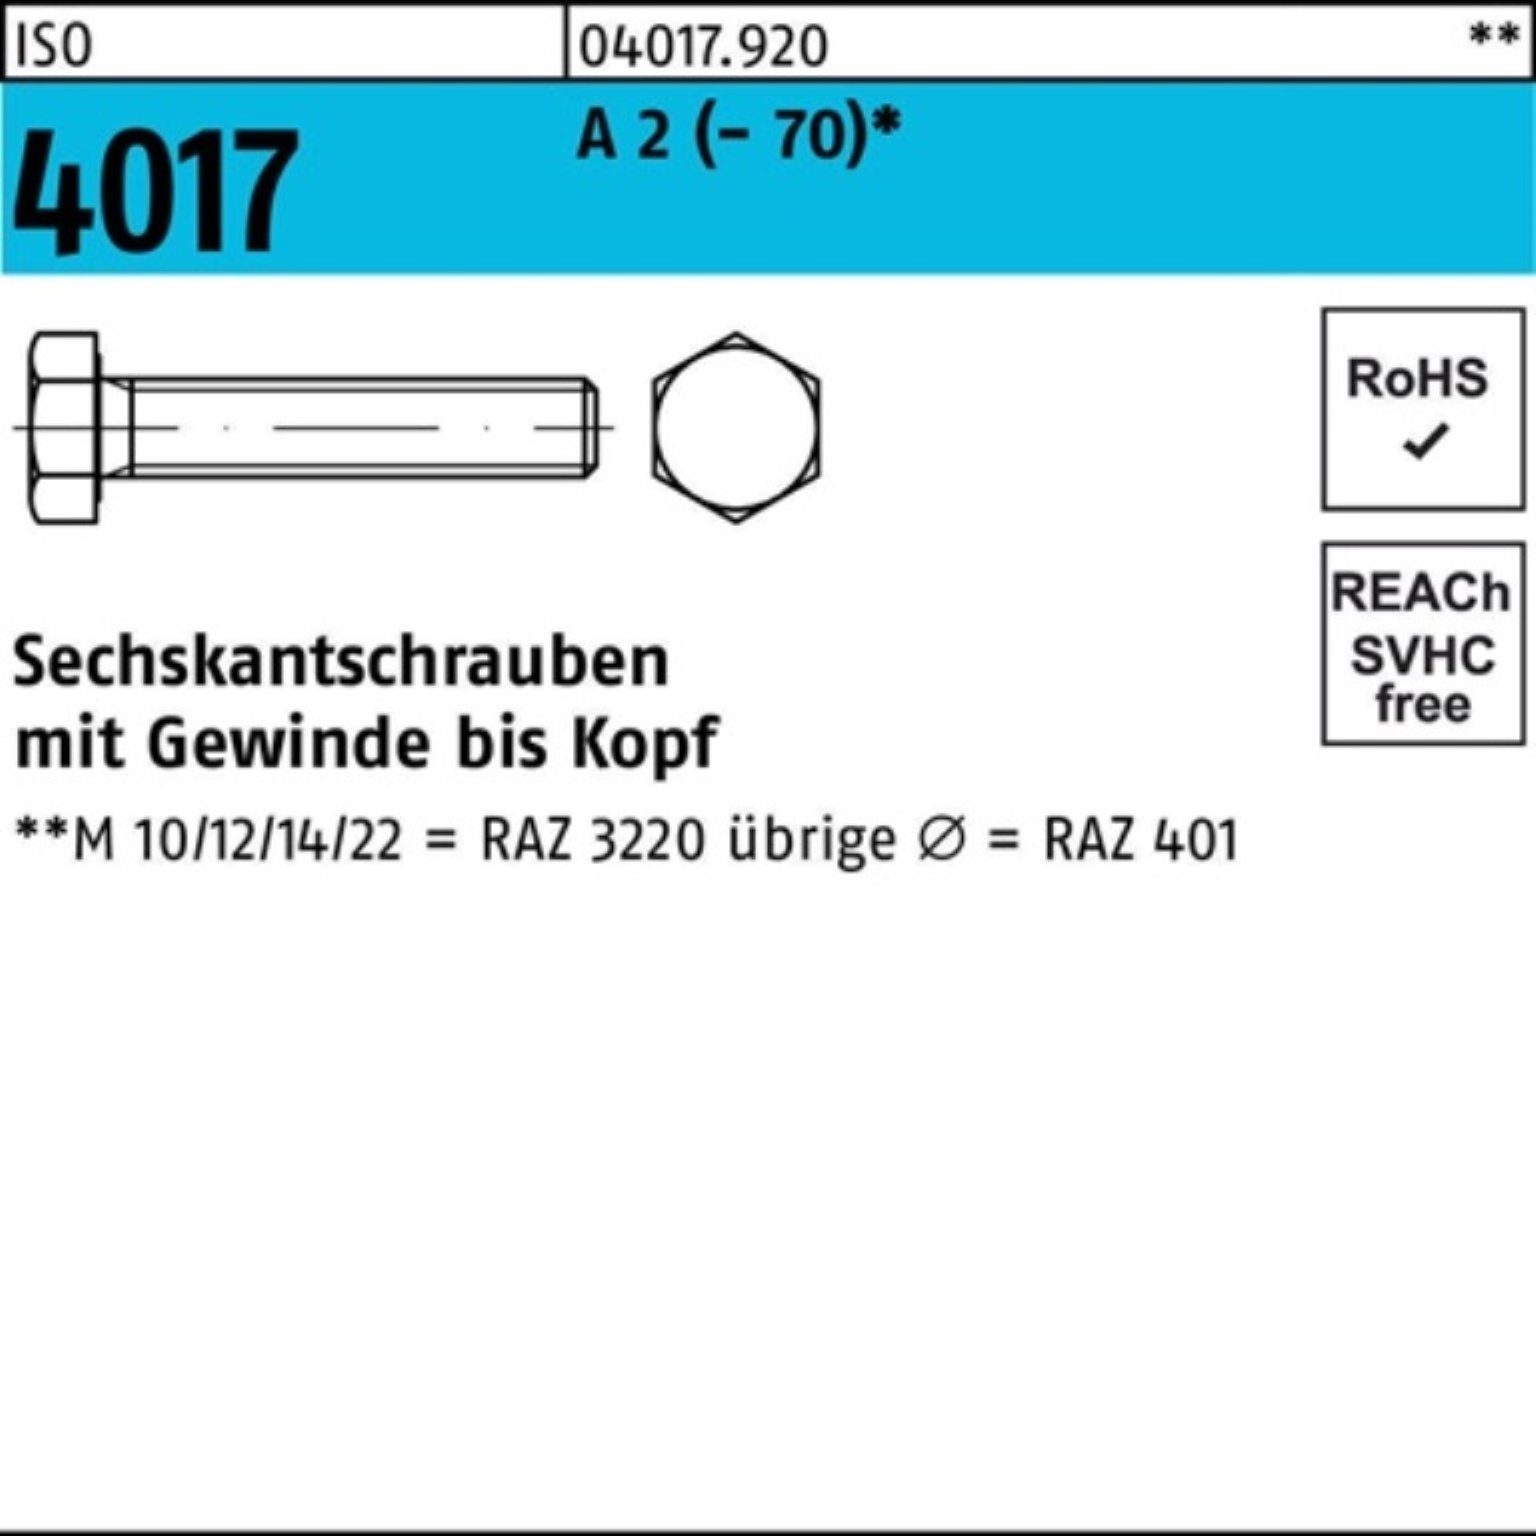 Bufab Sechskantschraube 100er (70) 55 Stück M8x 4017 ISO Pack Sechskantschraube 2 100 A VG